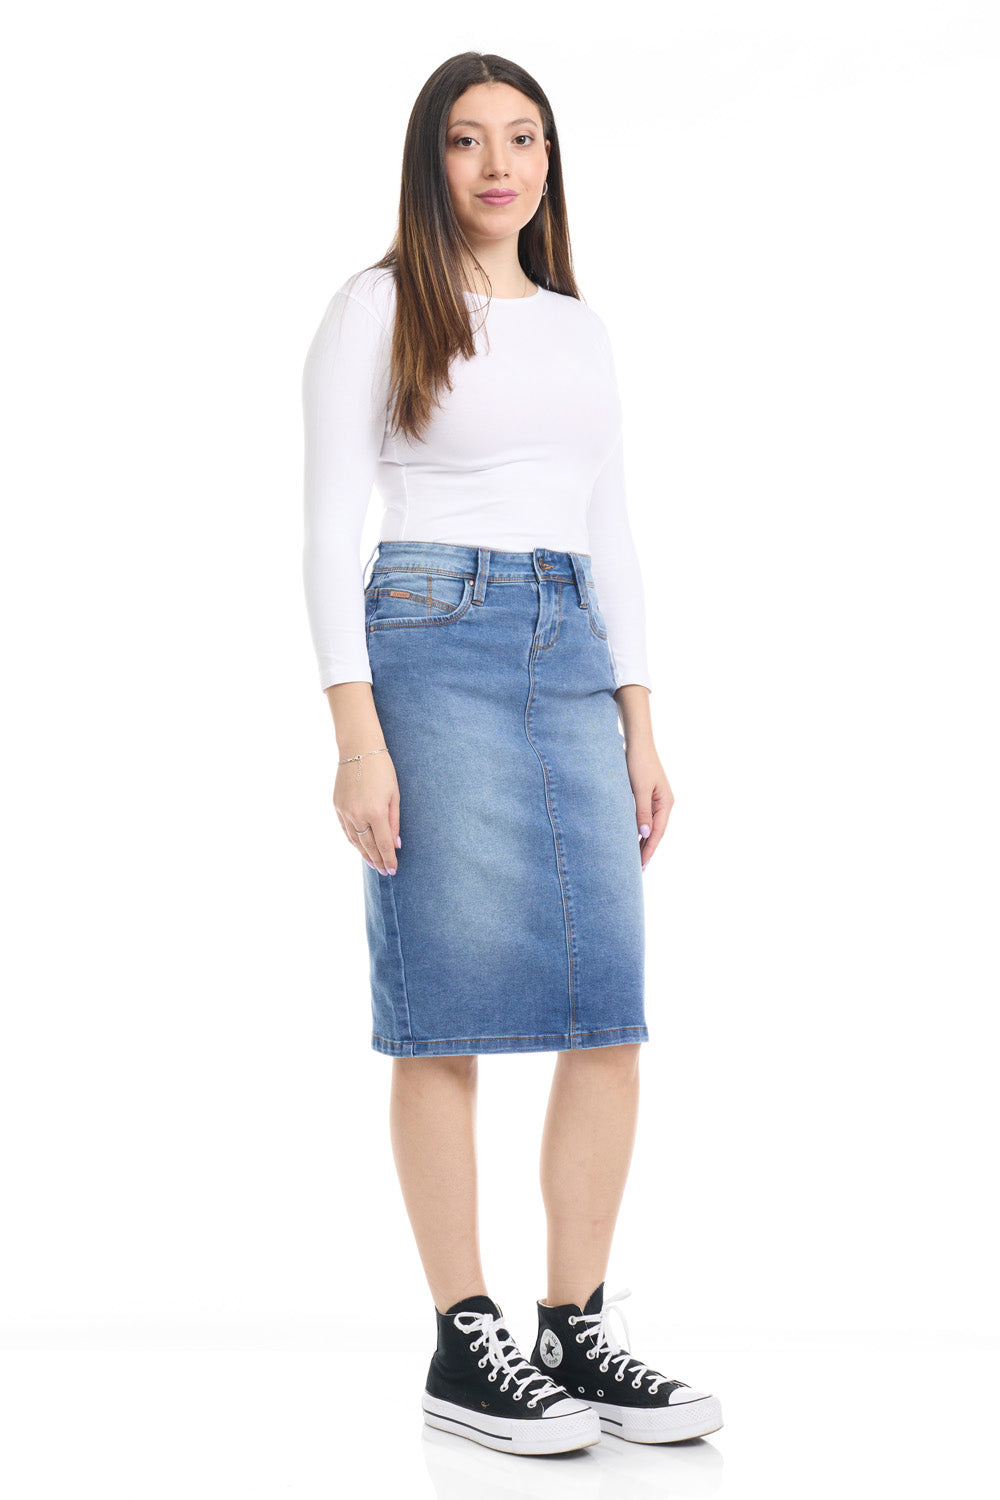 blue jean modest knee length stretchy denim skirt for women